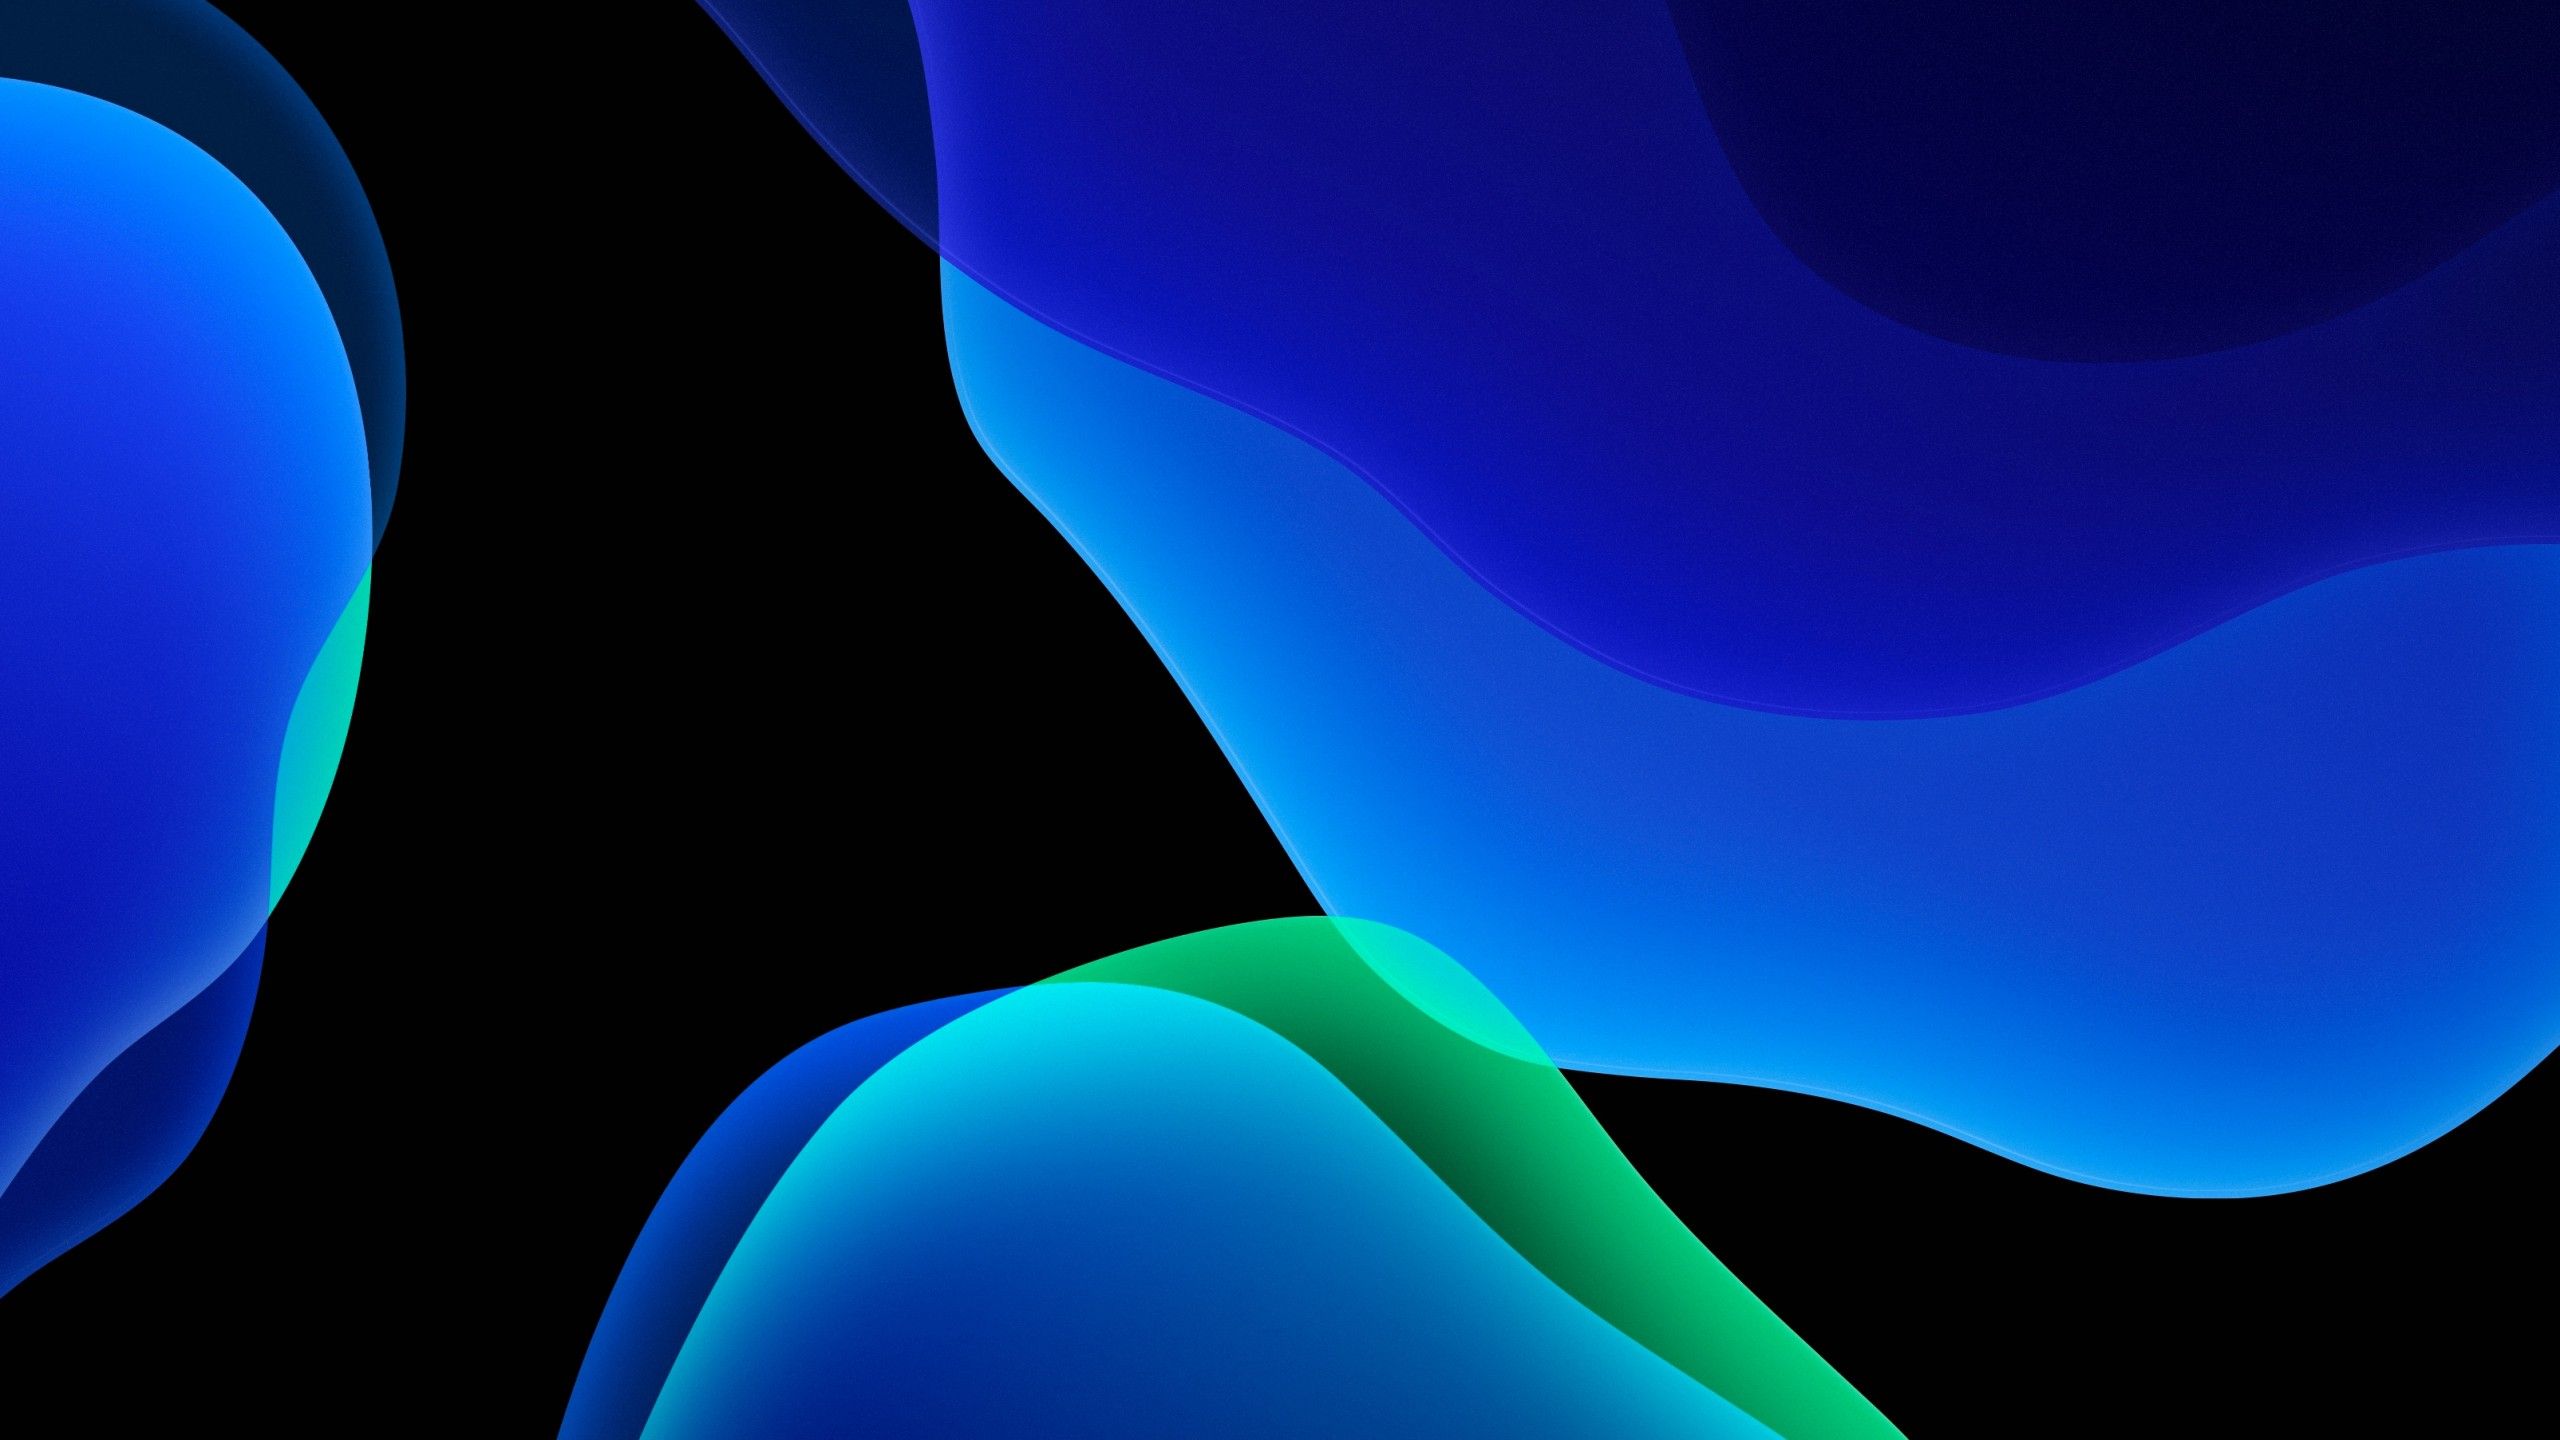 iOS 13 Wallpaper 4K, Stock, iPadOS, Blue, Abstract